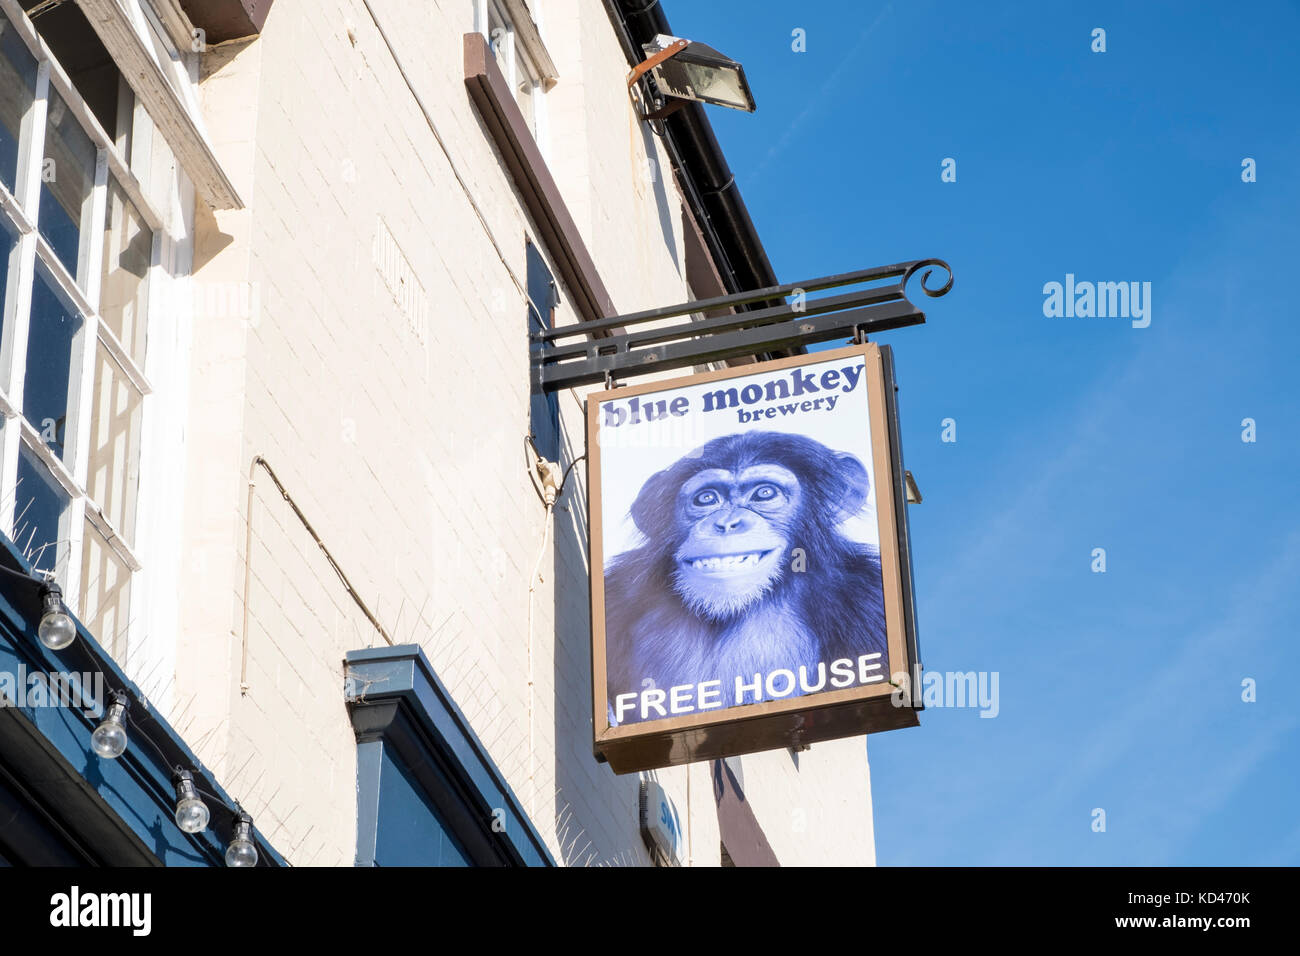 Blue Monkey Brewery pub sign, Arnold, Nottinghamshire, England, UK Stock Photo